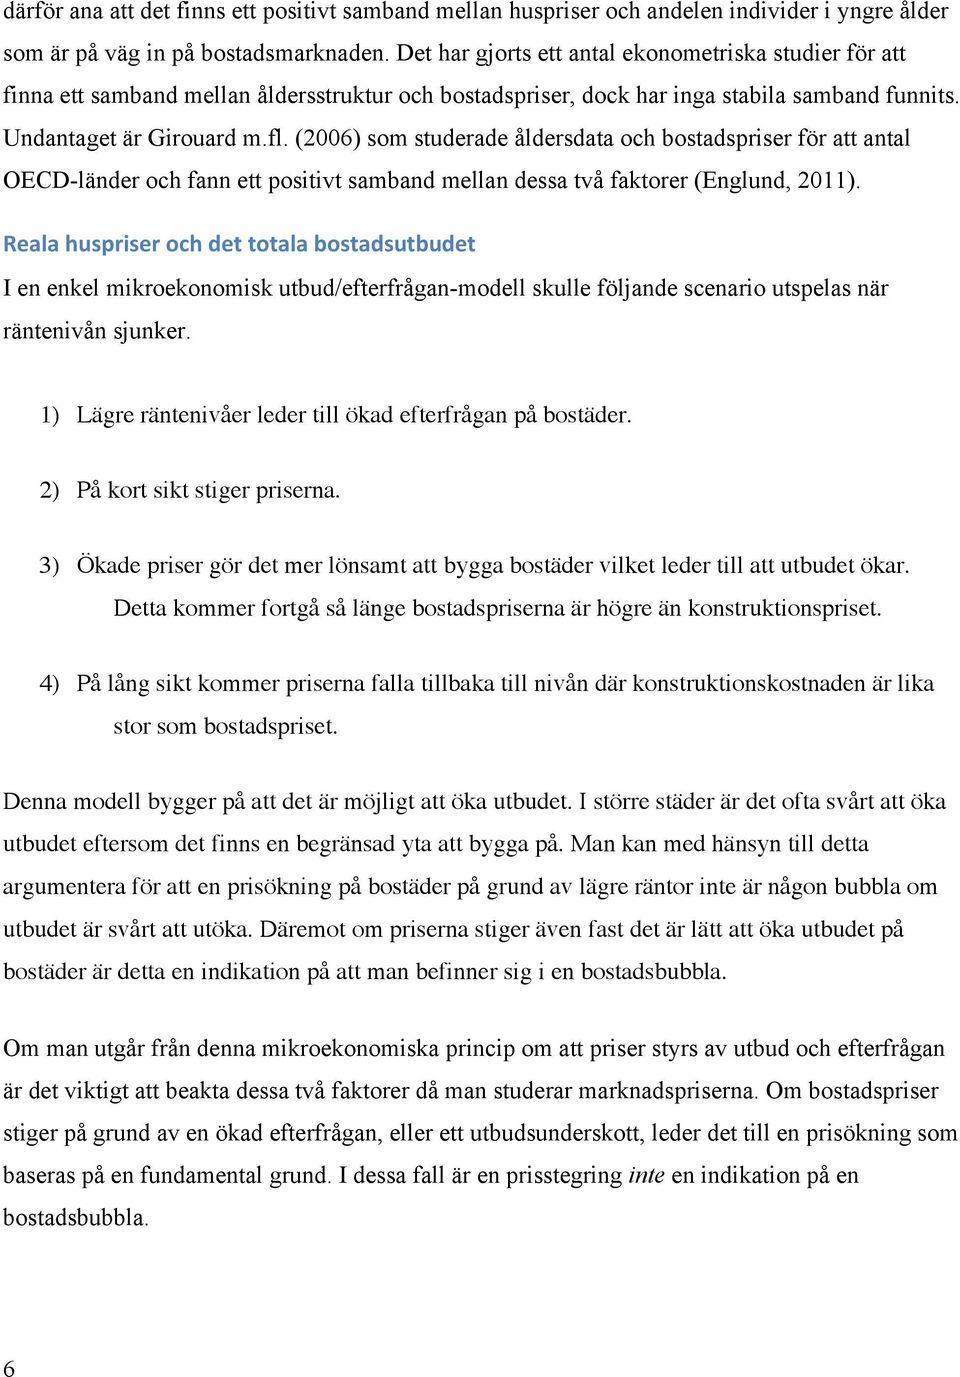 Sveriges bostadsmarknad - - PDF Free Download